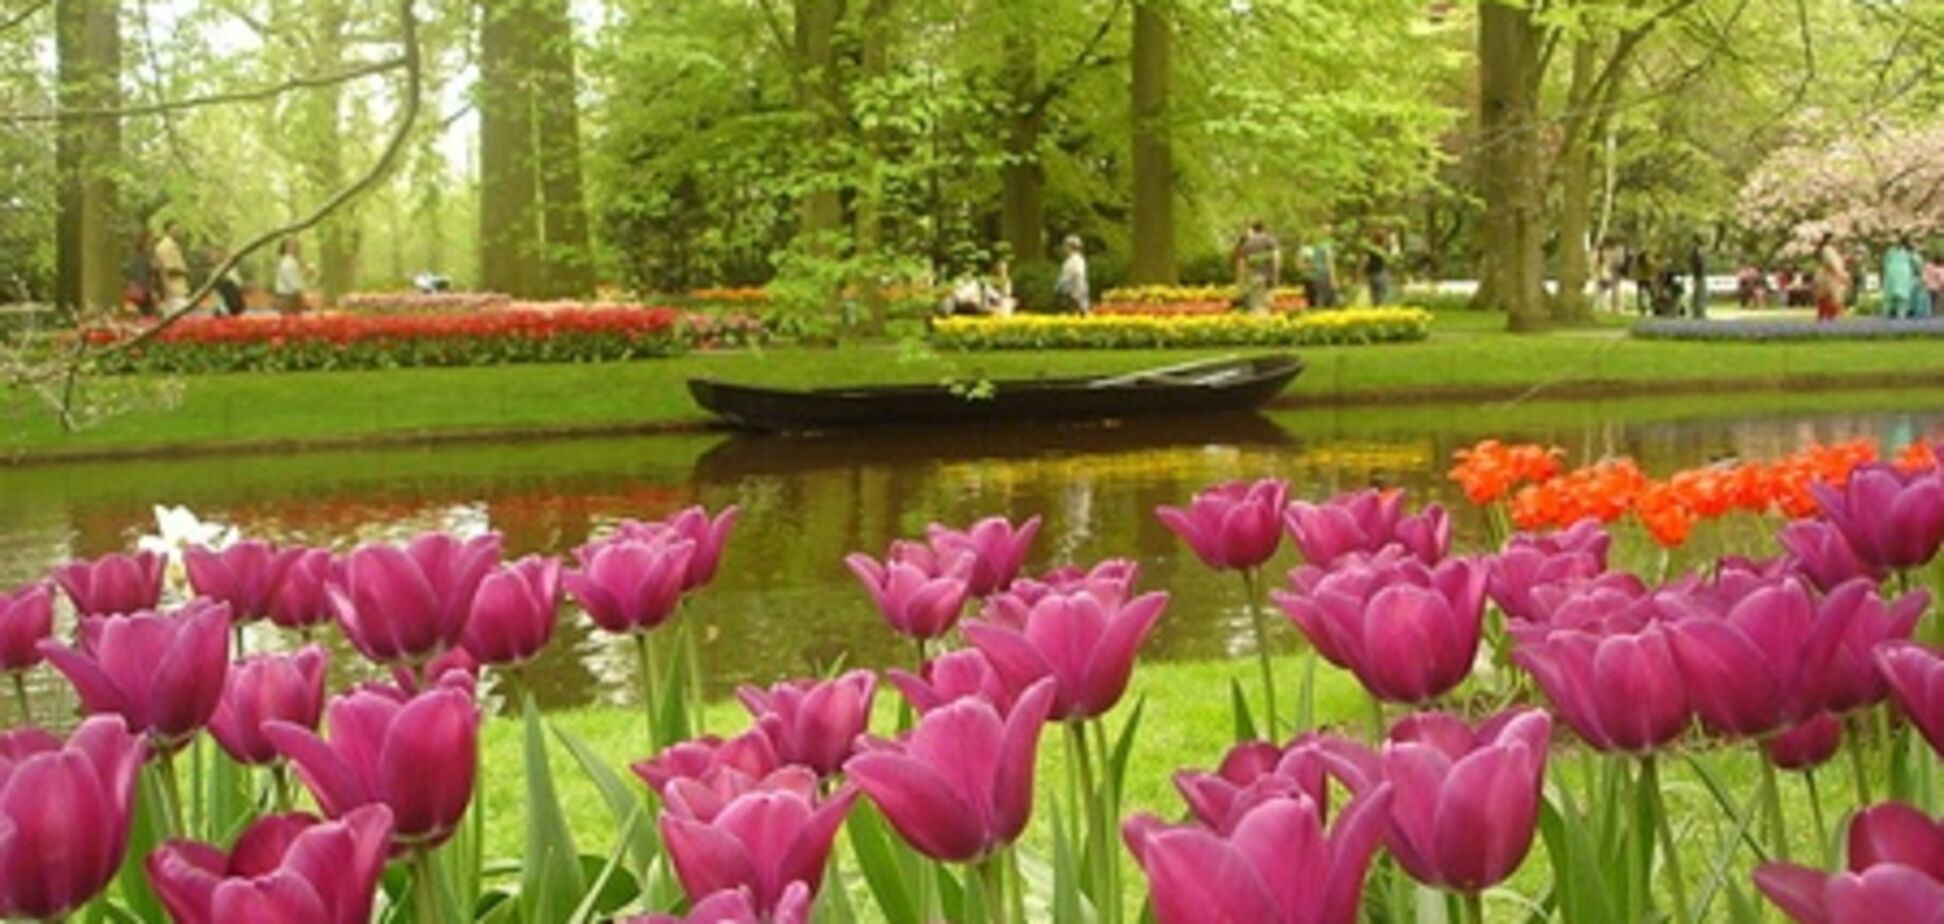 Апрель в Европе: Пасха, тюльпаны и фейерверки